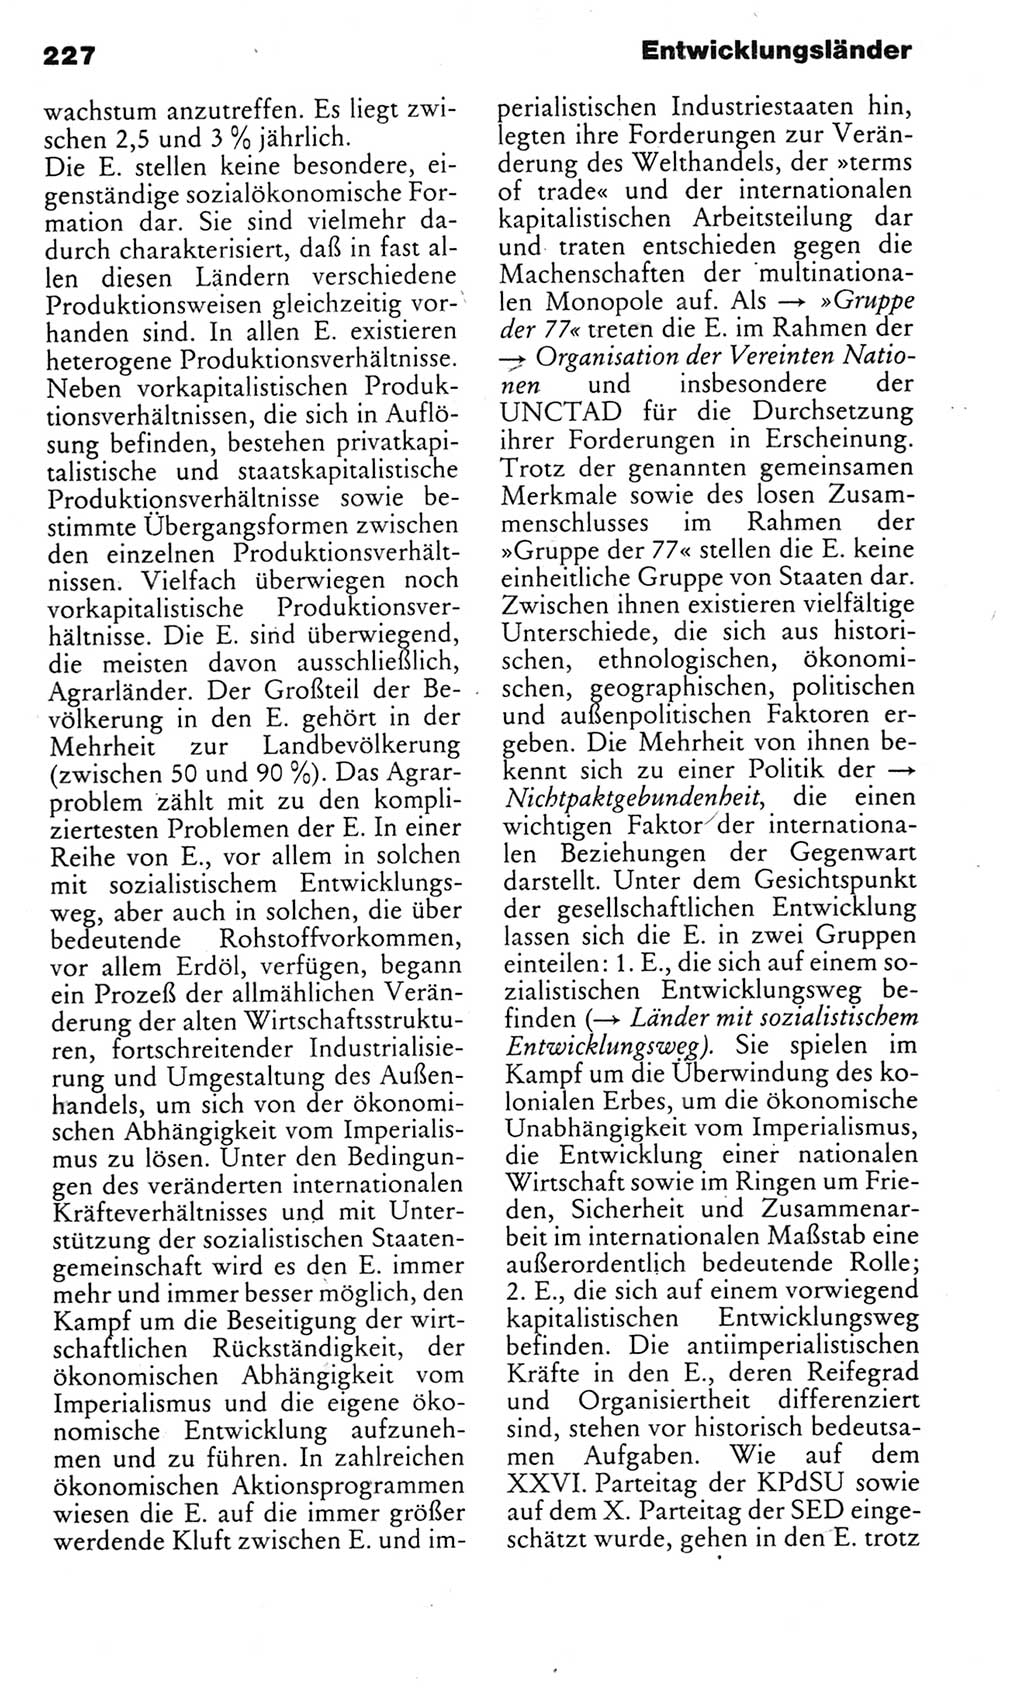 Kleines politisches Wörterbuch [Deutsche Demokratische Republik (DDR)] 1983, Seite 227 (Kl. pol. Wb. DDR 1983, S. 227)